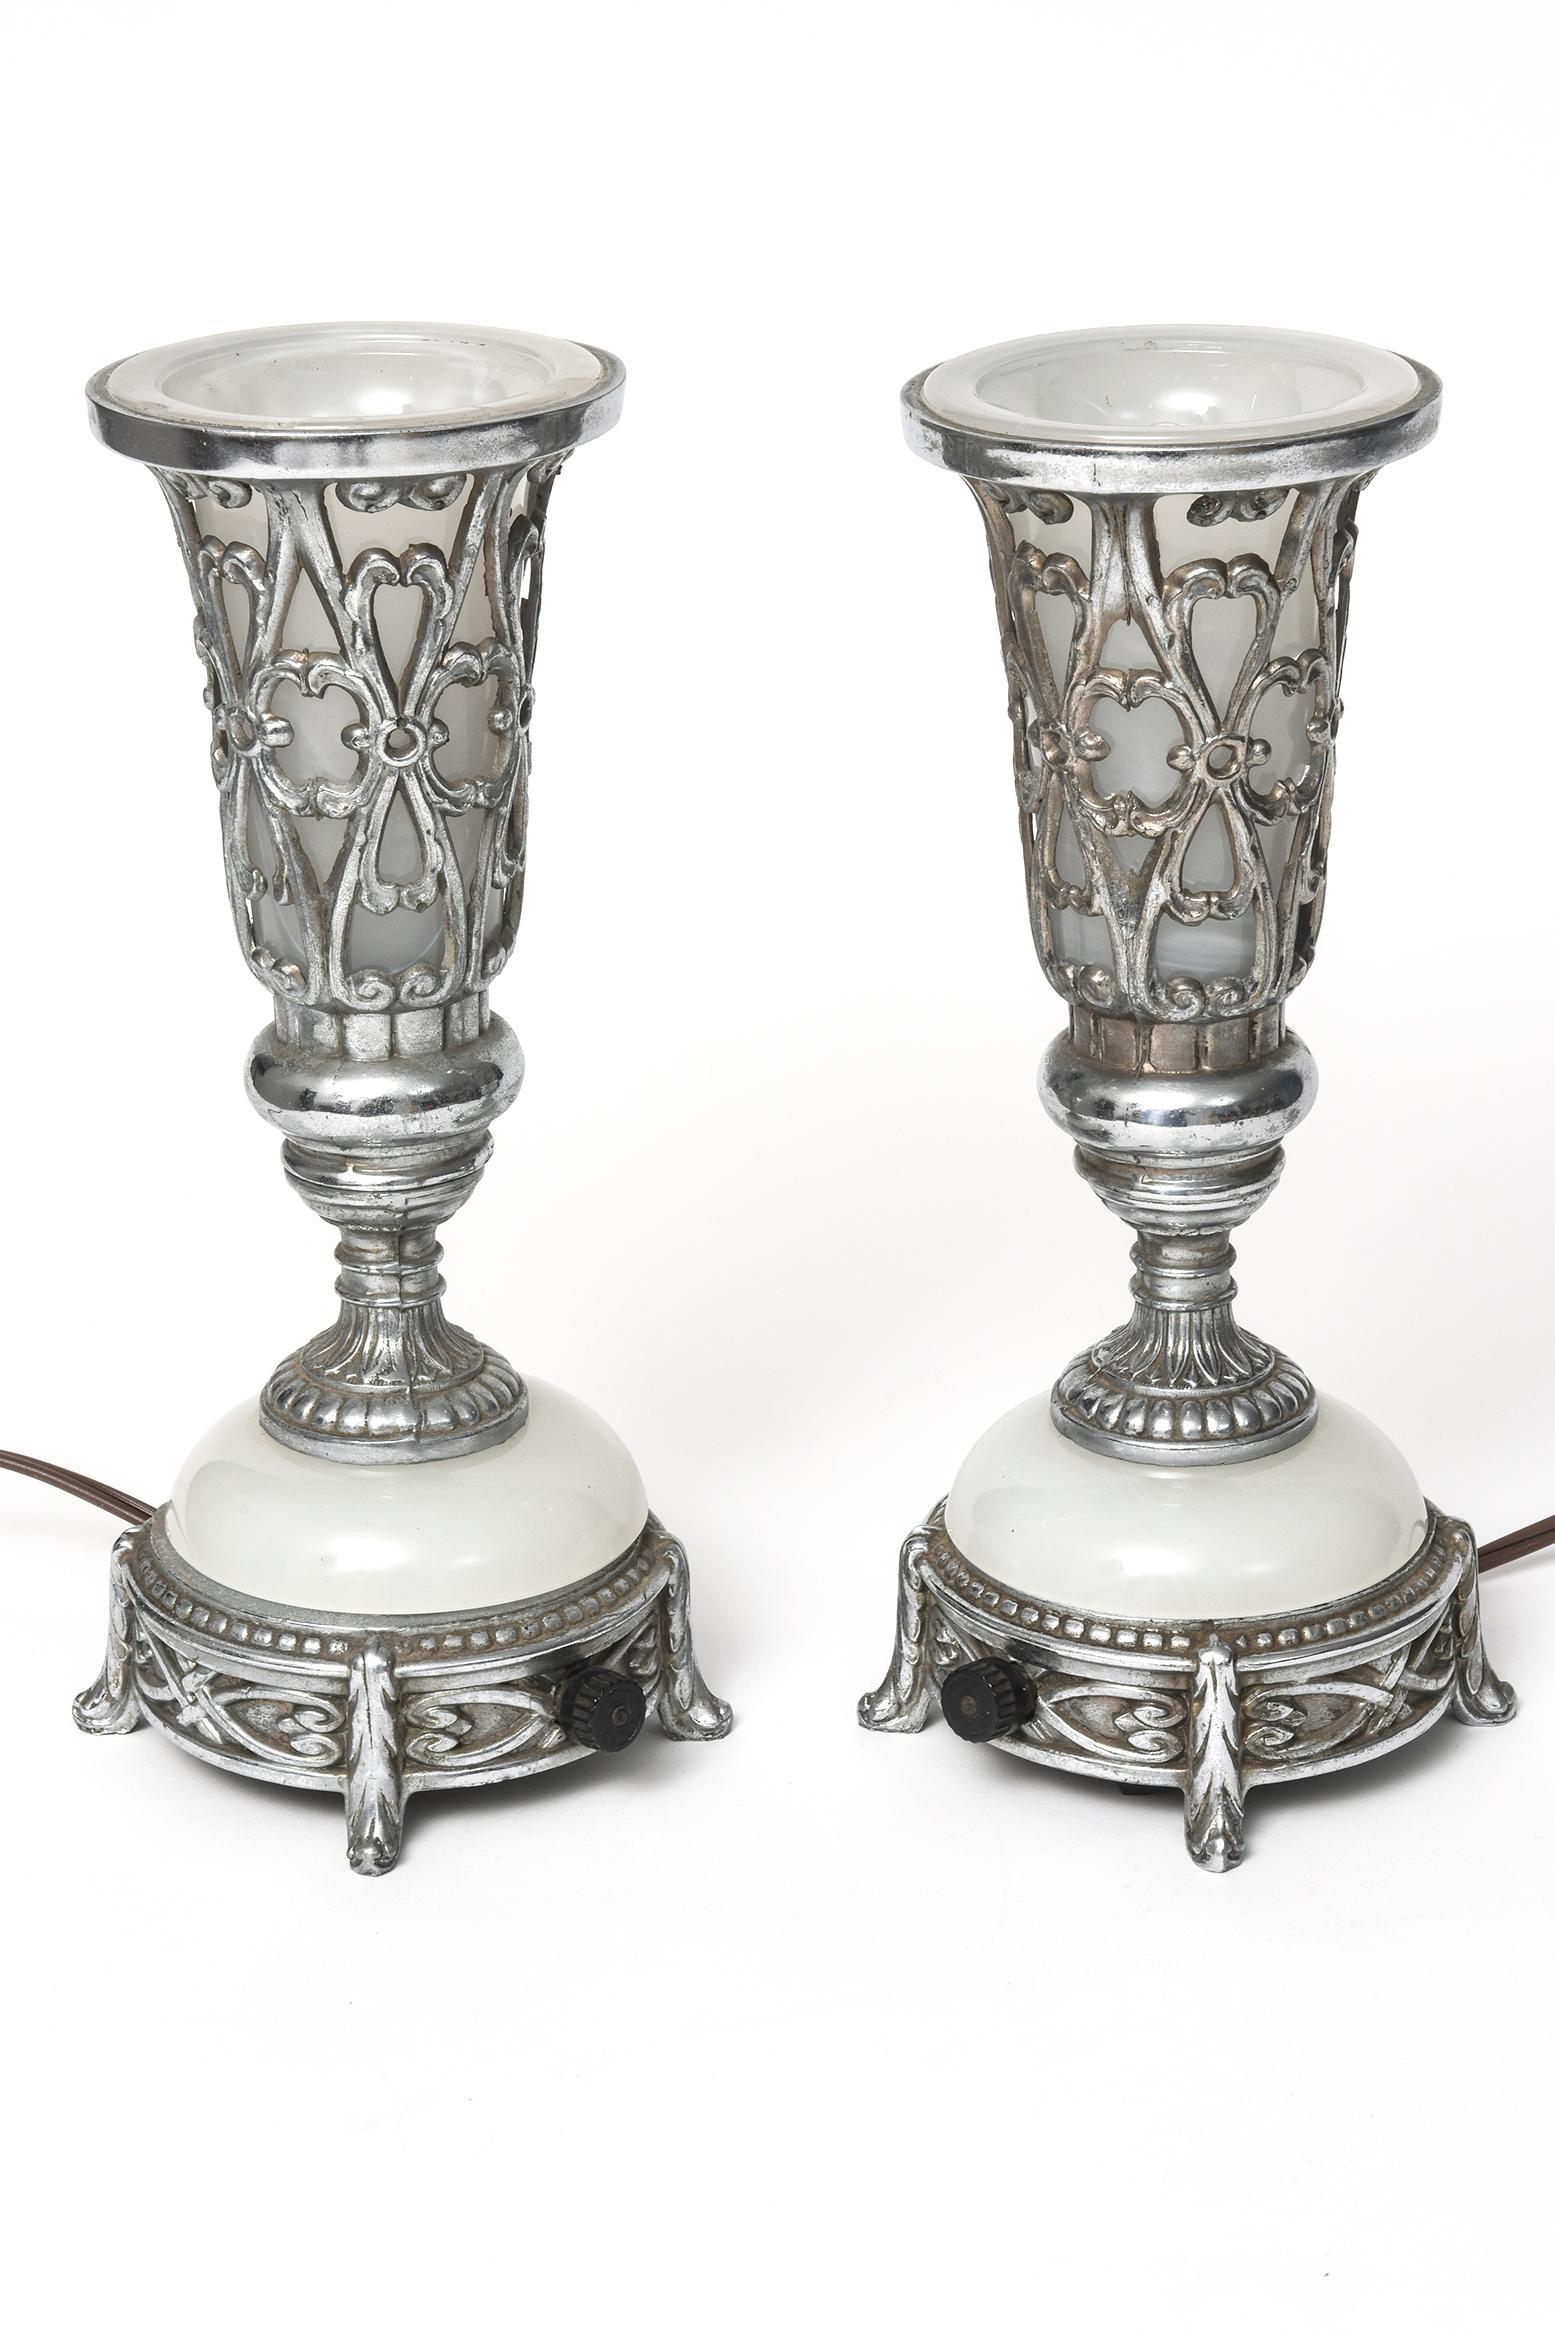 Rare paire de lampes de table ou de cheminée Art Déco - parfaites pour un éclairage romantique ou comme veilleuses.
Ces lampes sont fabriquées en métal chromé et en verre de lait. La section supérieure au-dessus de la section en verre blanc en